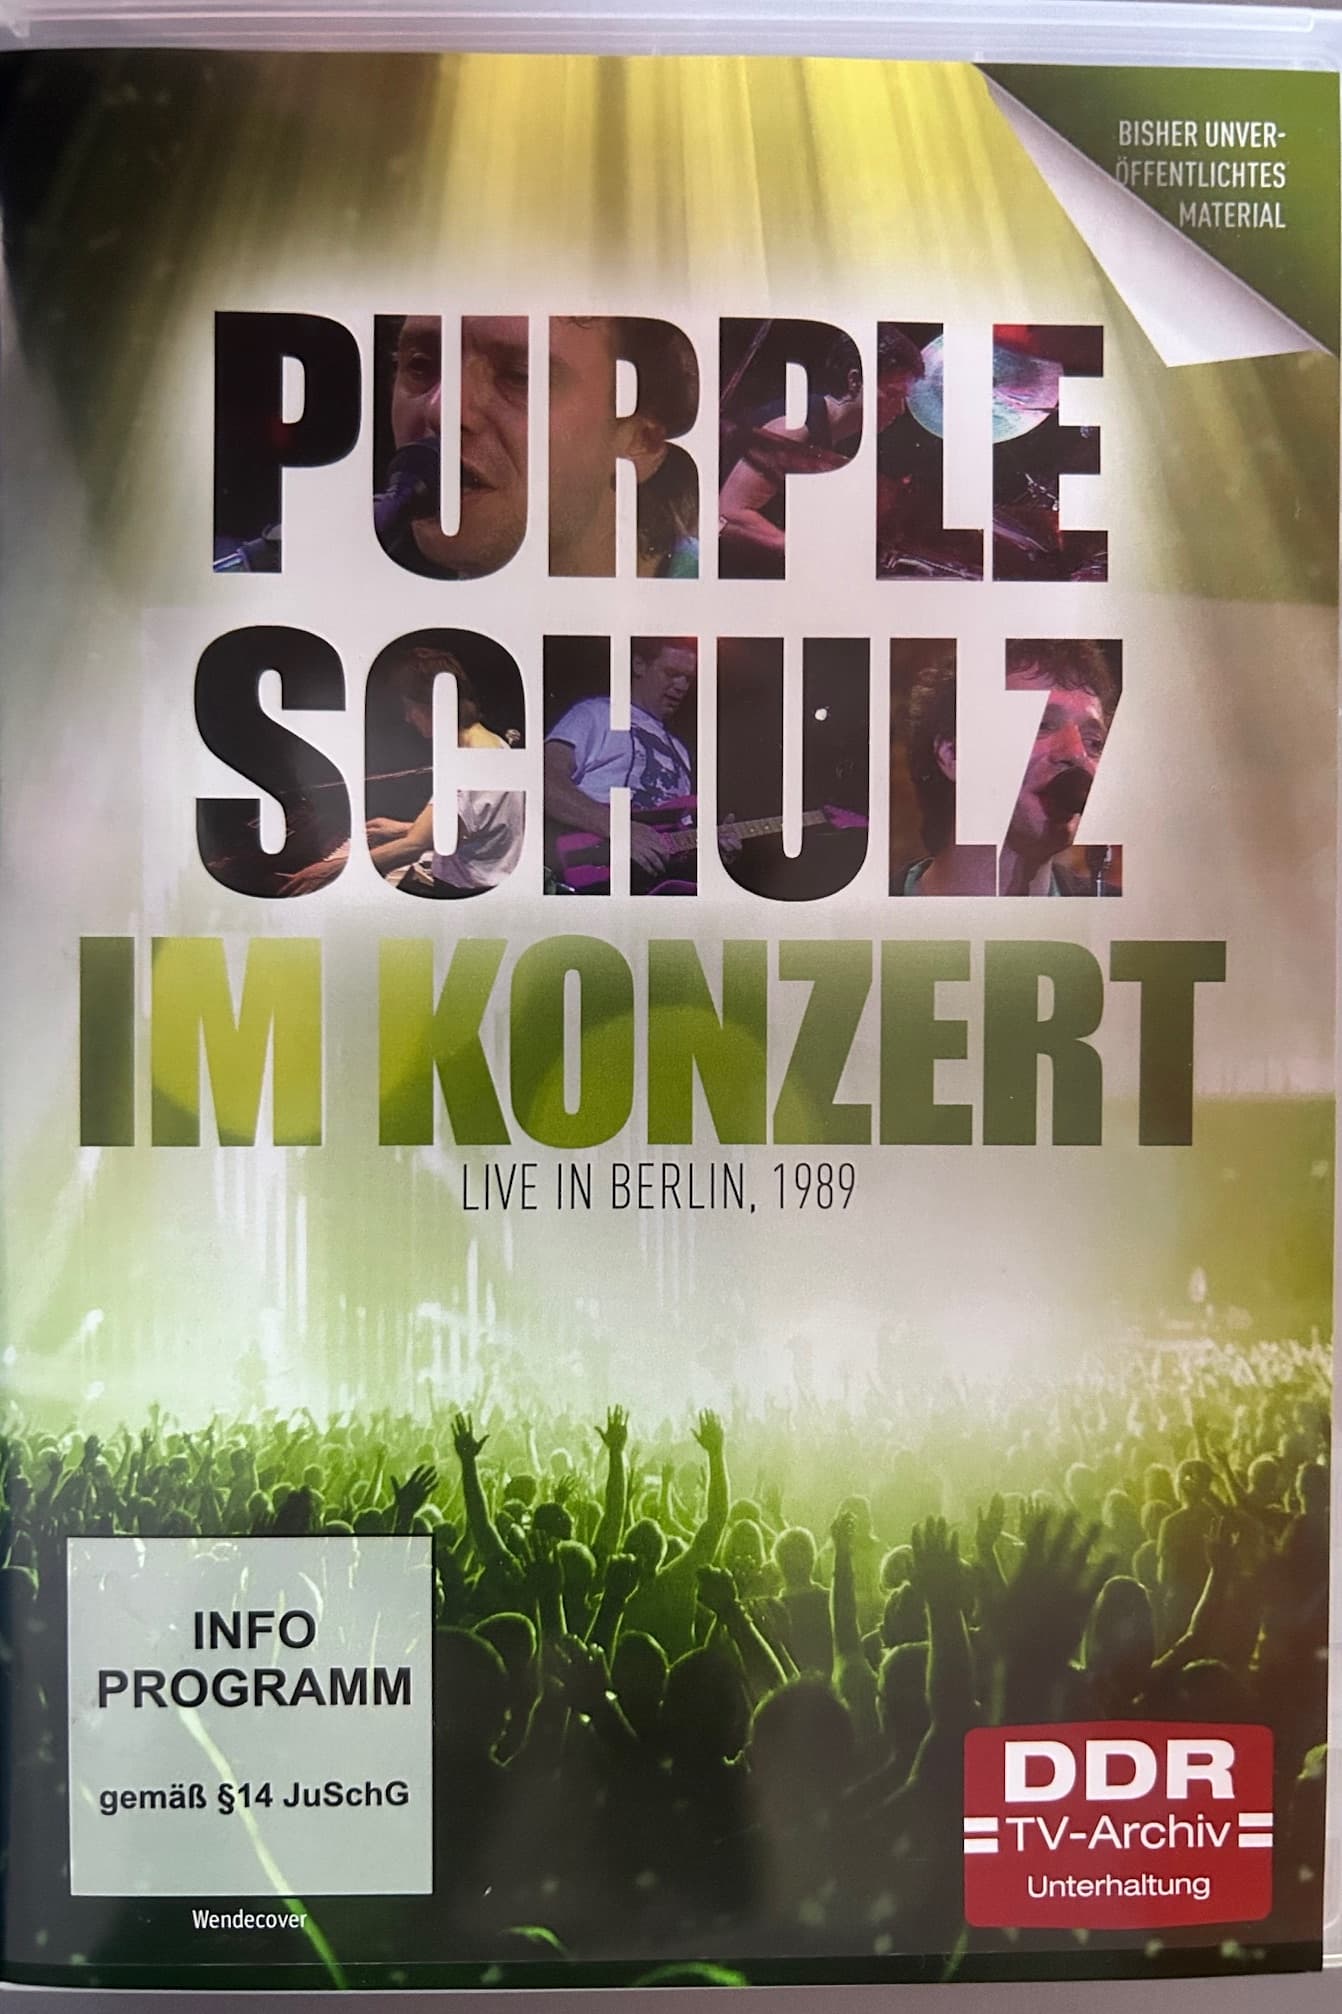 Purple Schulz im Konzert